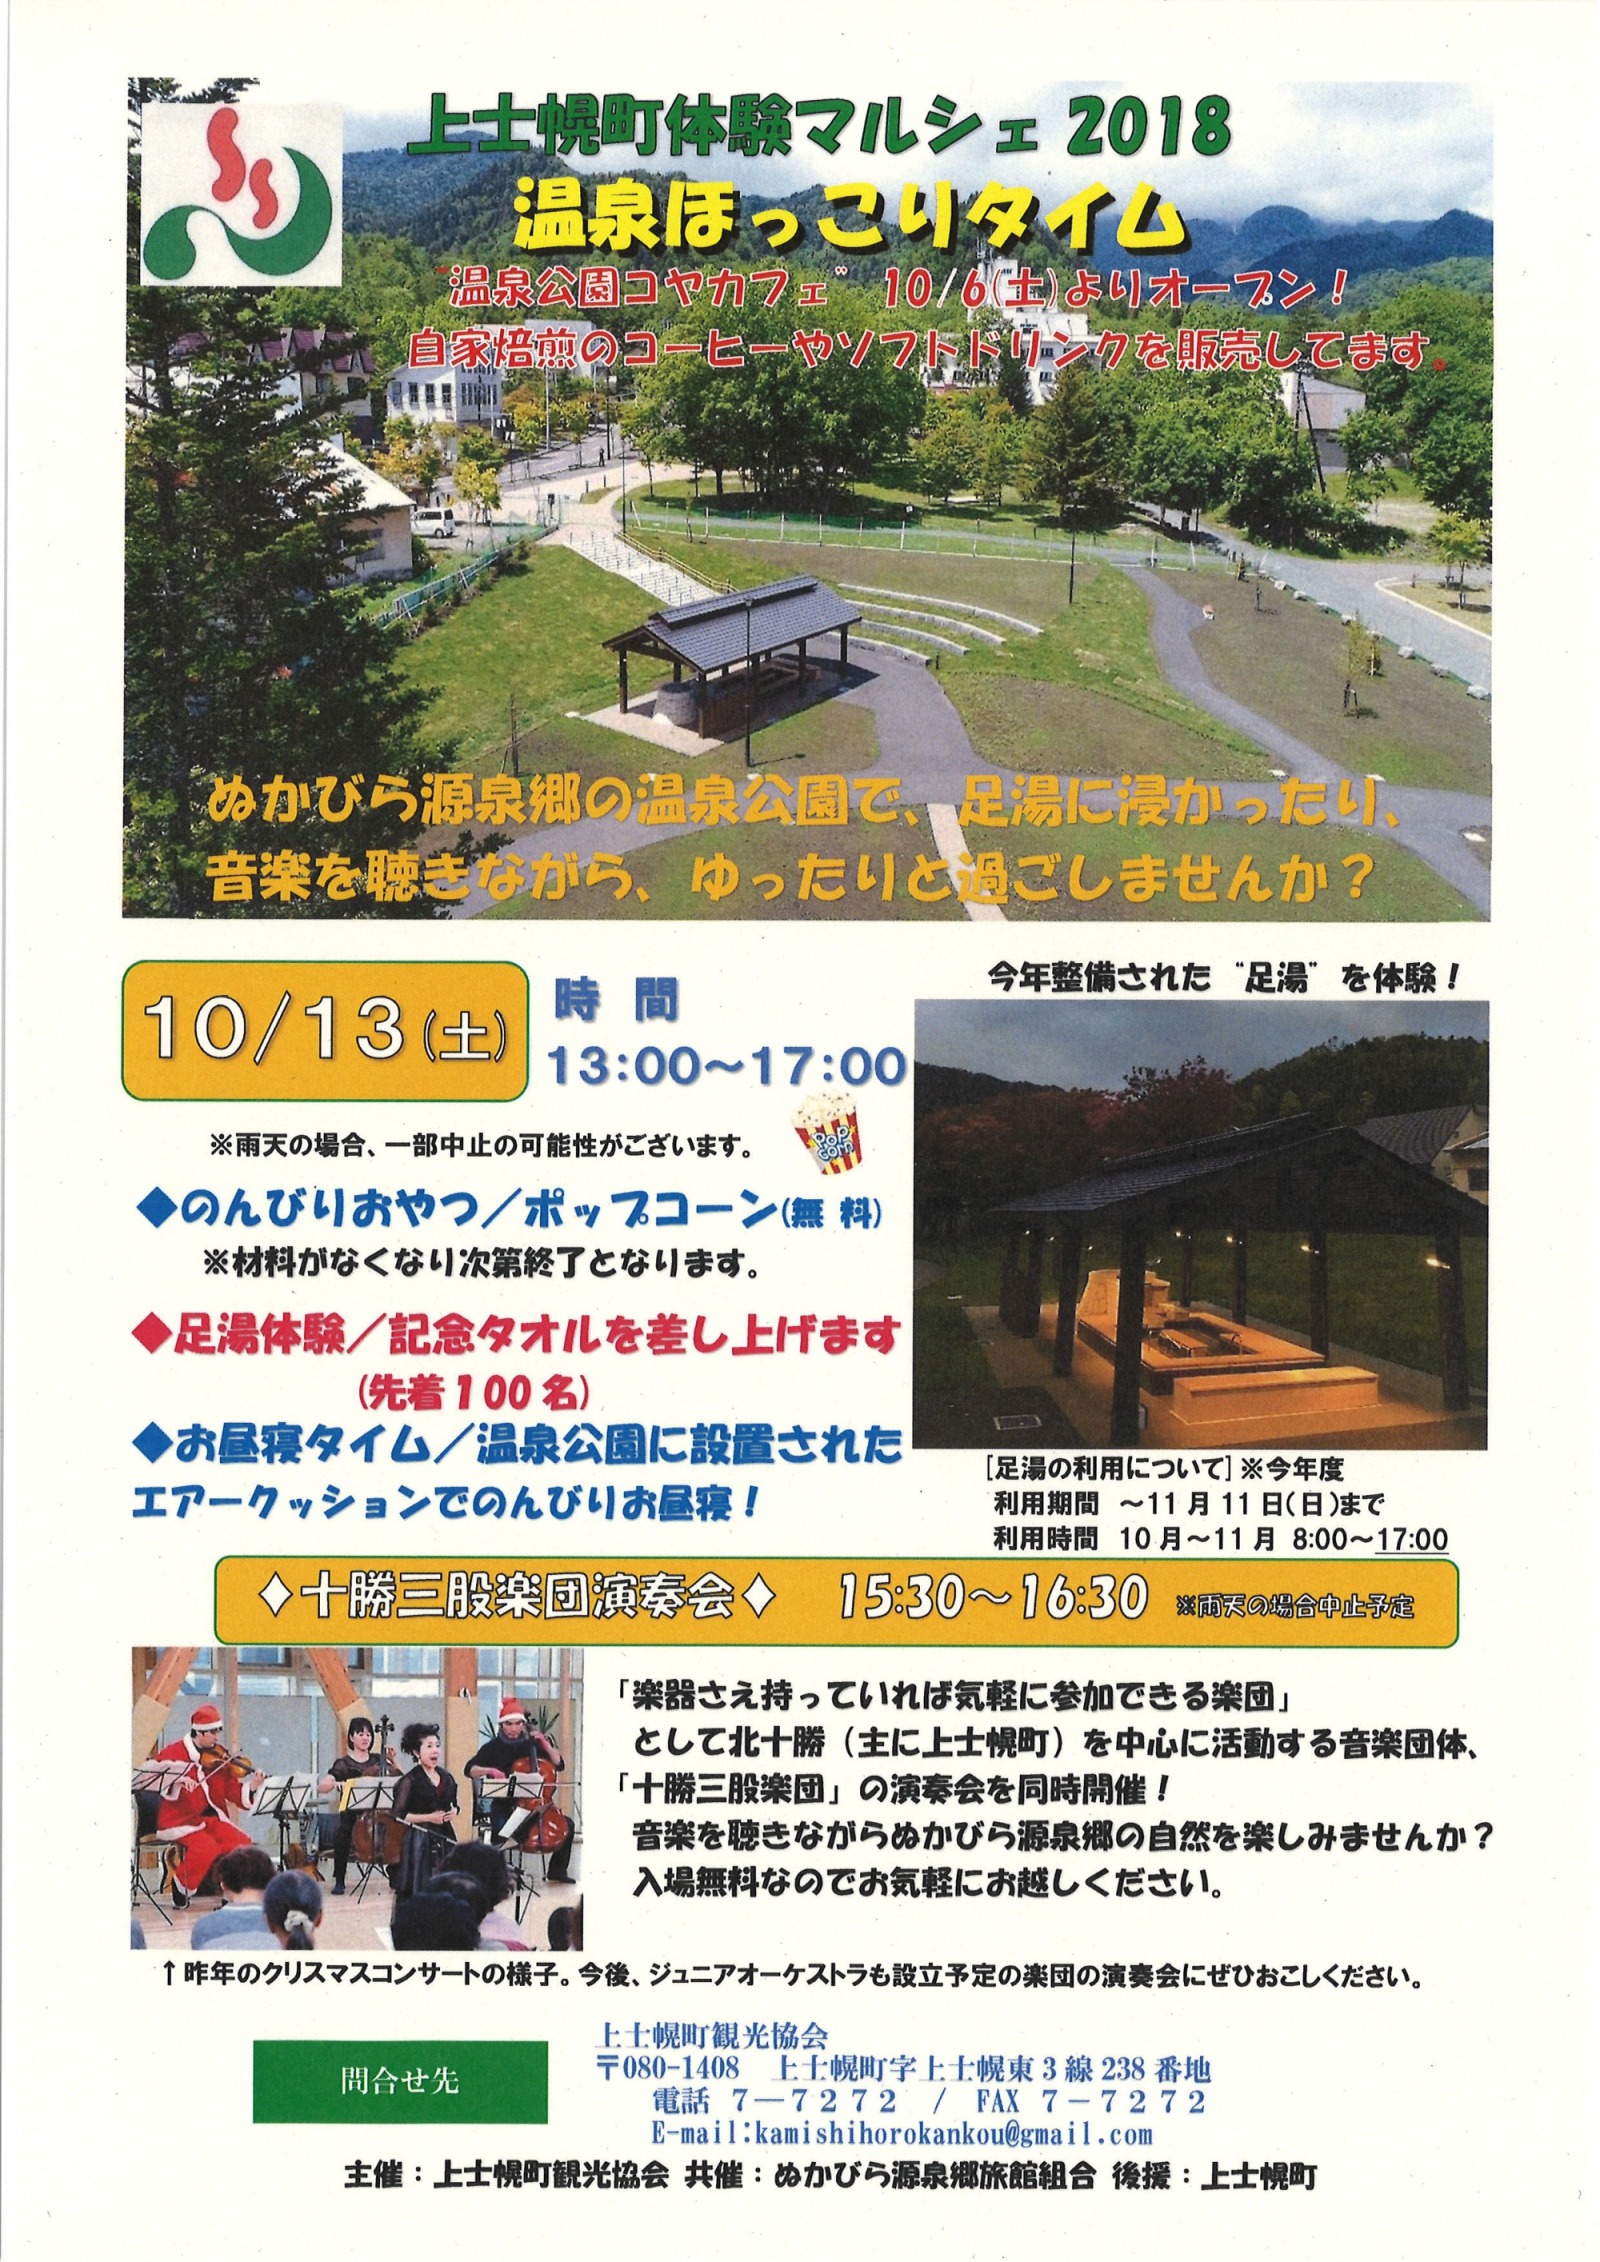 上士幌町観光協会主催イベント　10/13(土)温泉ほっこりタイムが開催されます。の画像